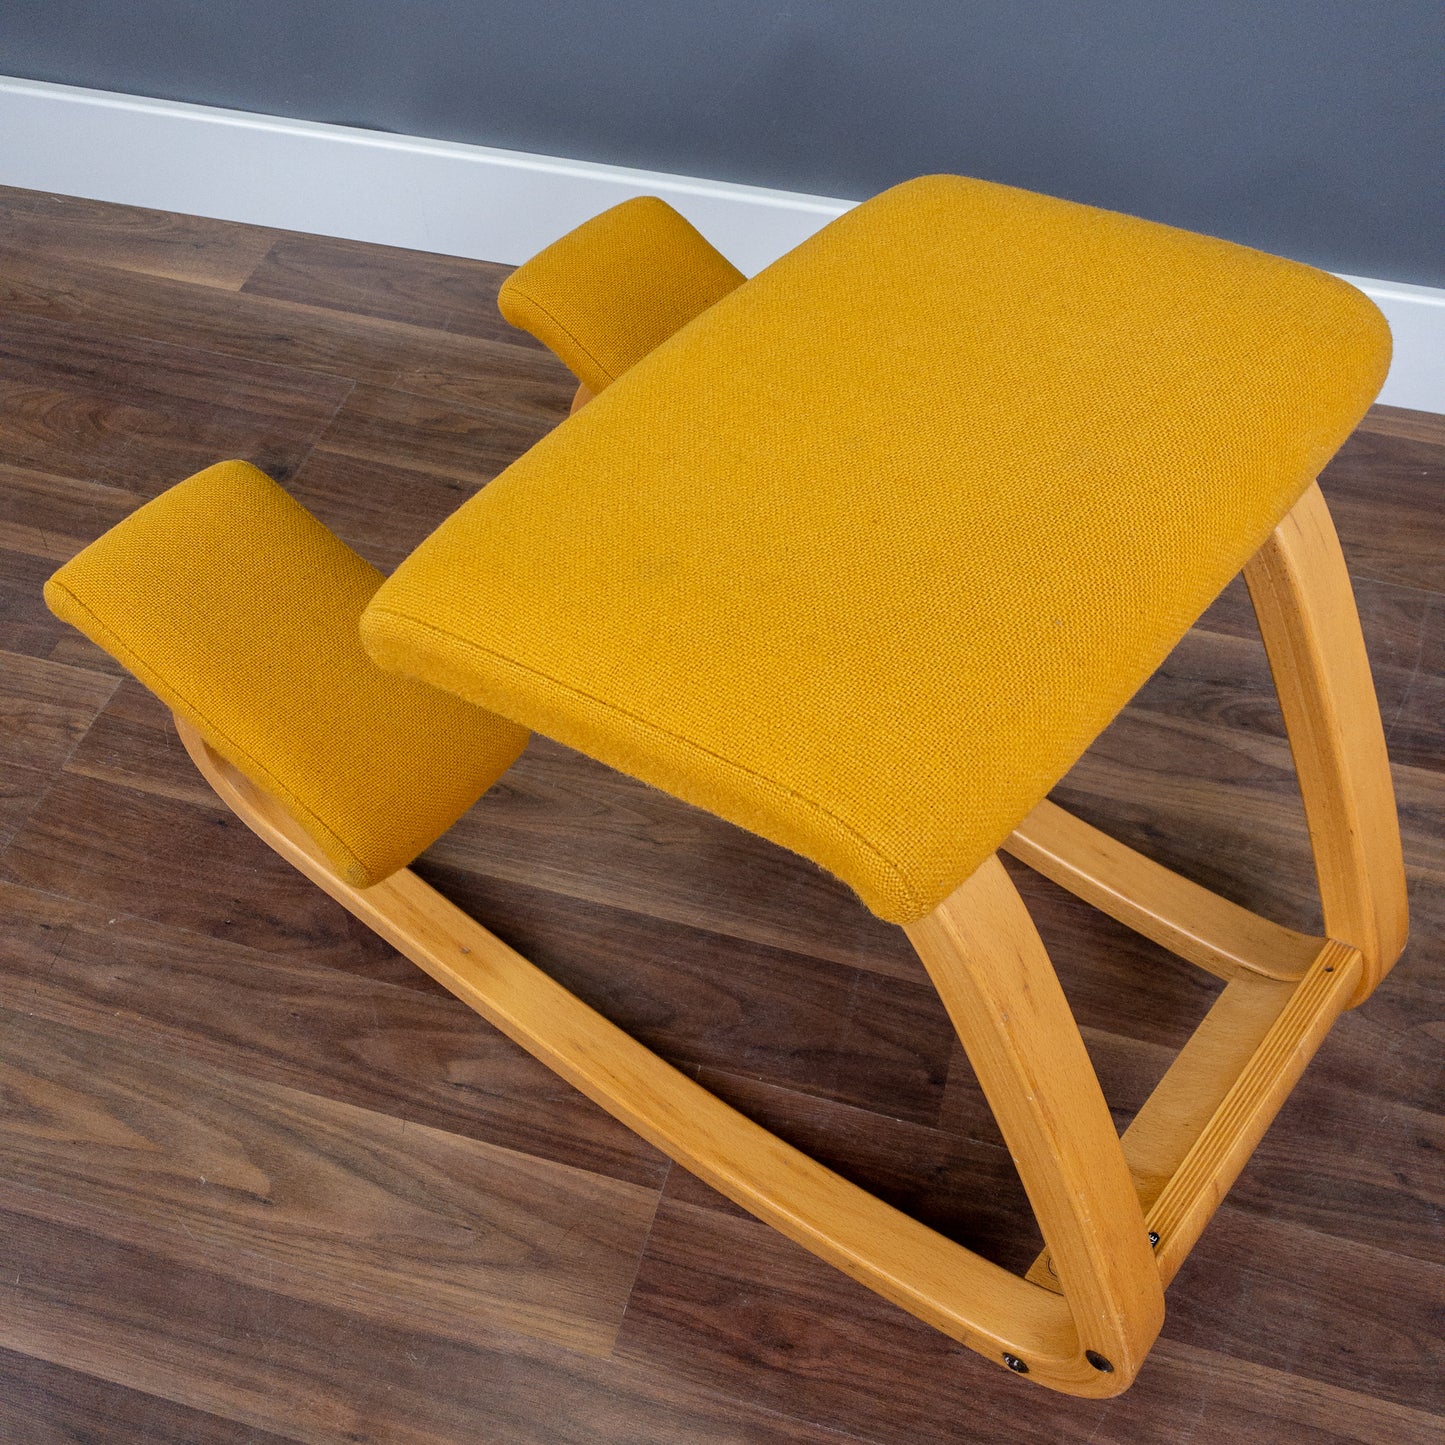 Vintage Stokke Variable Balans Ergonomic Kneeling Chair - “The original kneeling chair”